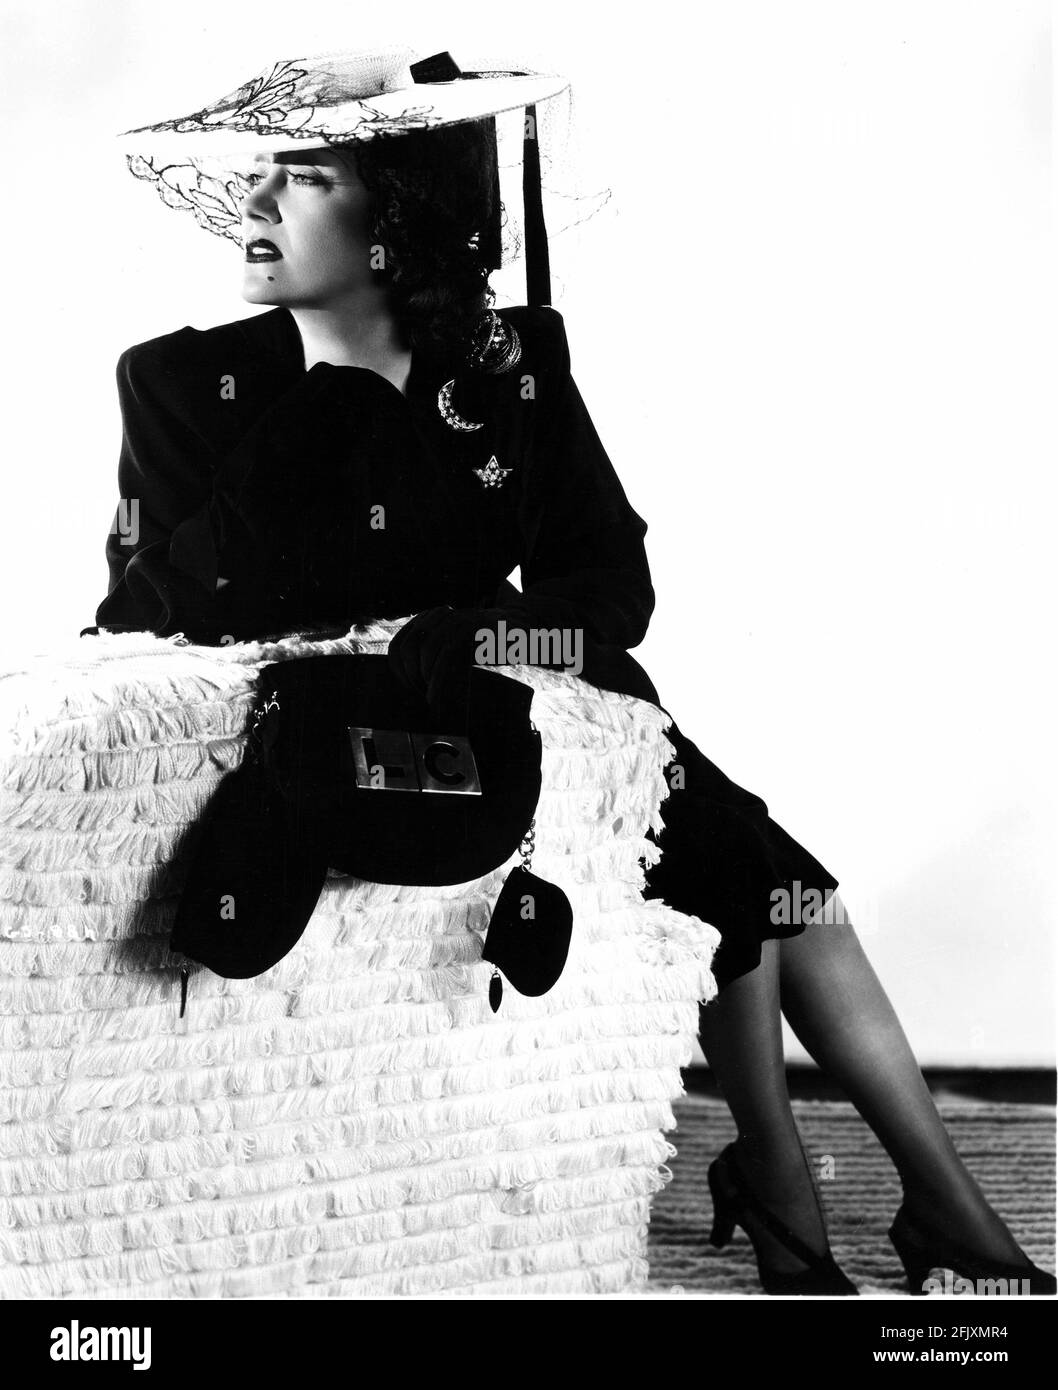 1940's : l'attrice GLORIA SWANSON ( 1898 - 1983 ) , Paramount publicity Still - FILM - CINEMA - attrice cinematografia - VAMP - DIVA - DIVINA - DIVINA - spalla - spalle - spalle - spilla - pin - gioielli - gioiello - gioiello - gioielli - gioielli - bijoux - bigiotteria - borsa - borsetta - borsa - neo - talpa - abito da passeggio - cappello - cappello - velo - veletta - luna - luna - stella - sandali - sandali - divano - divano - moda - guanti - guanti ---- Archivio GBB Foto Stock